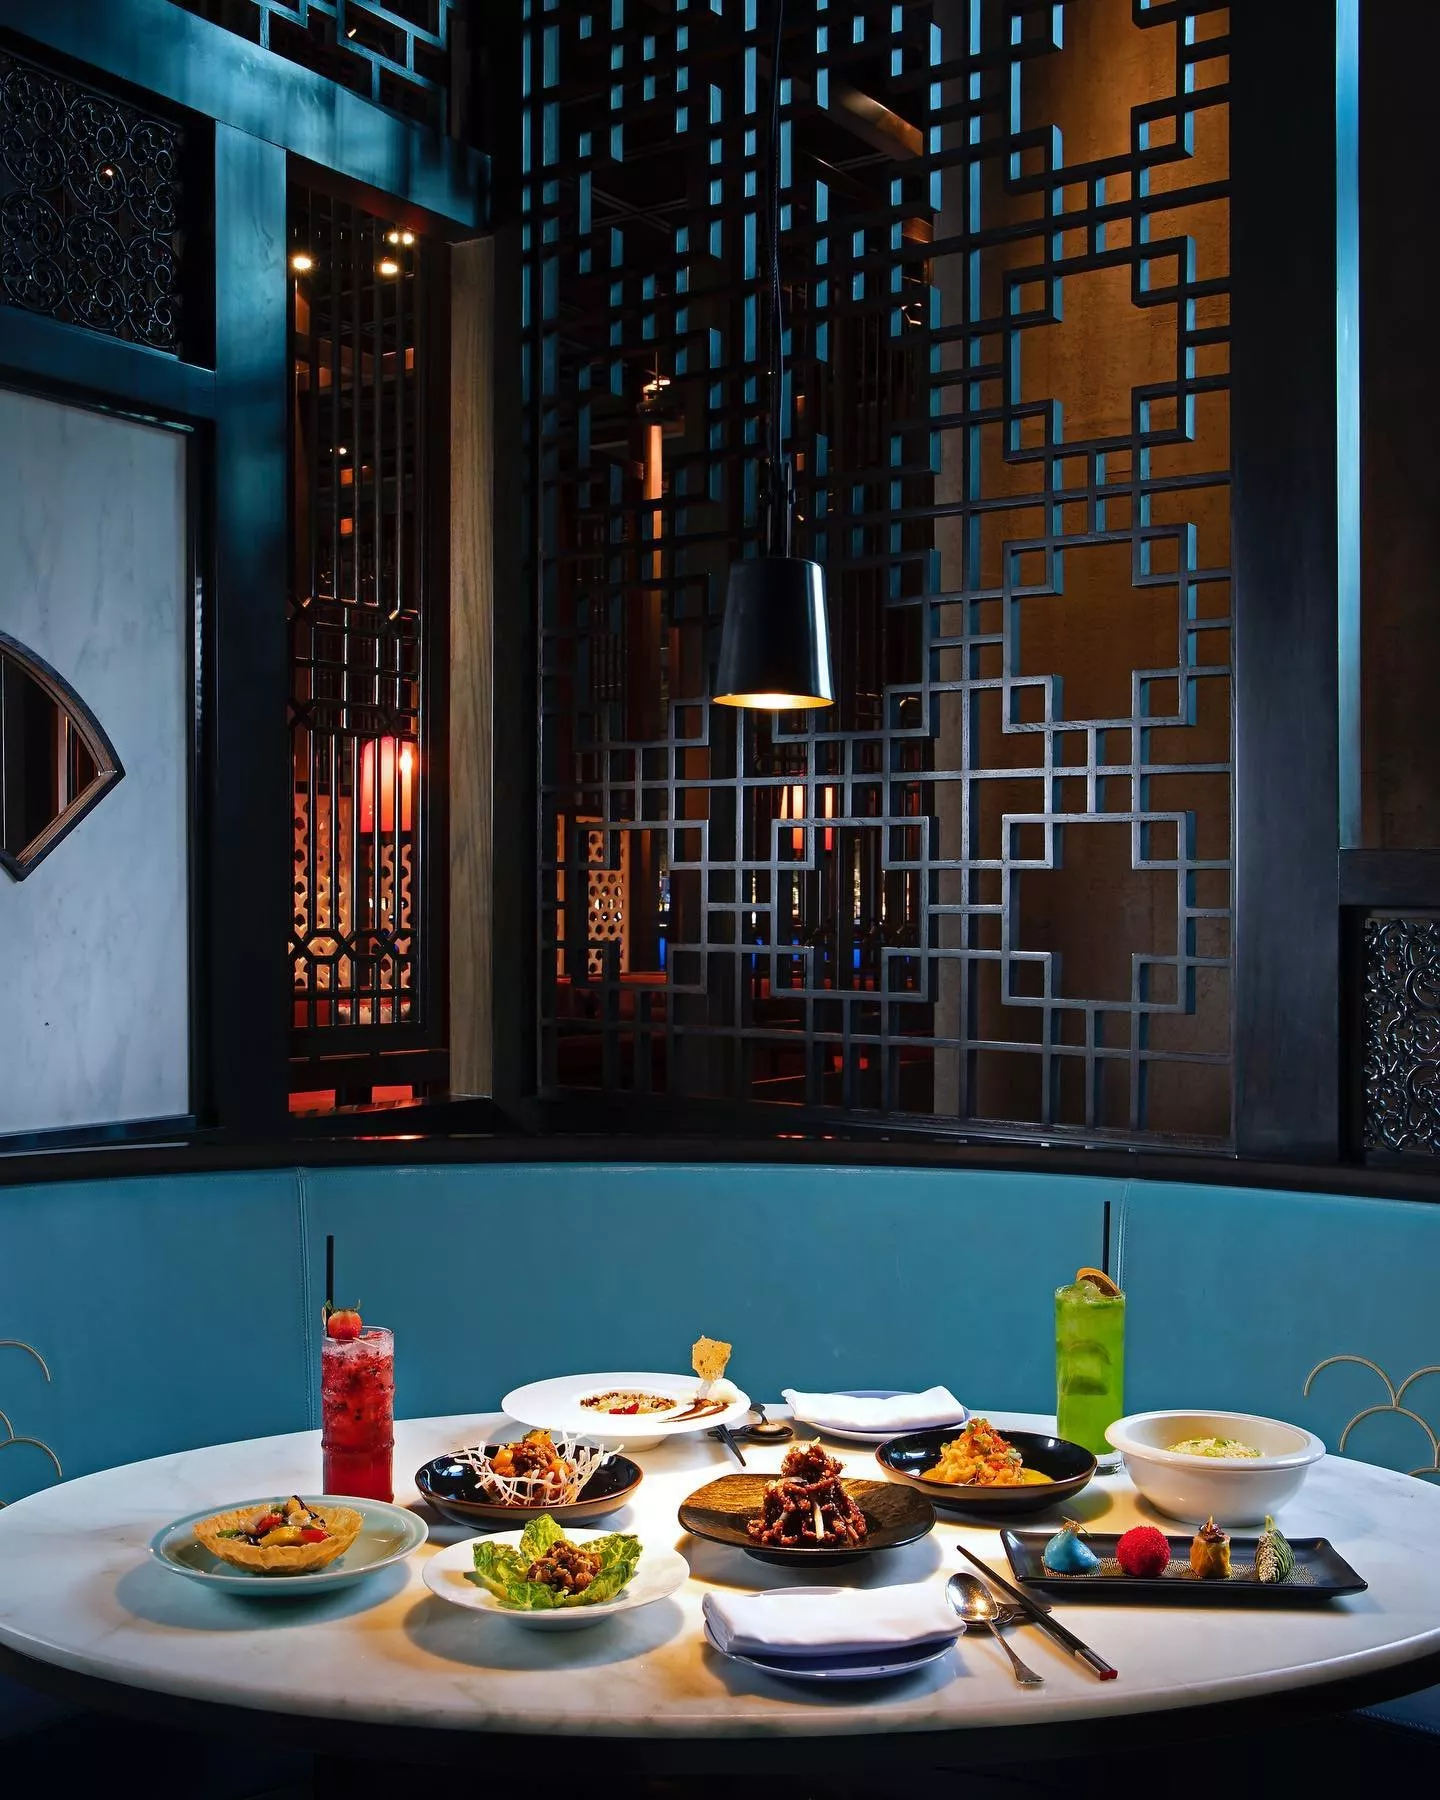 افضل مطاعم فاخرة في ابو ظبي... ستُبهركِ بديكورها المميّز وأطباقها اللذيذة